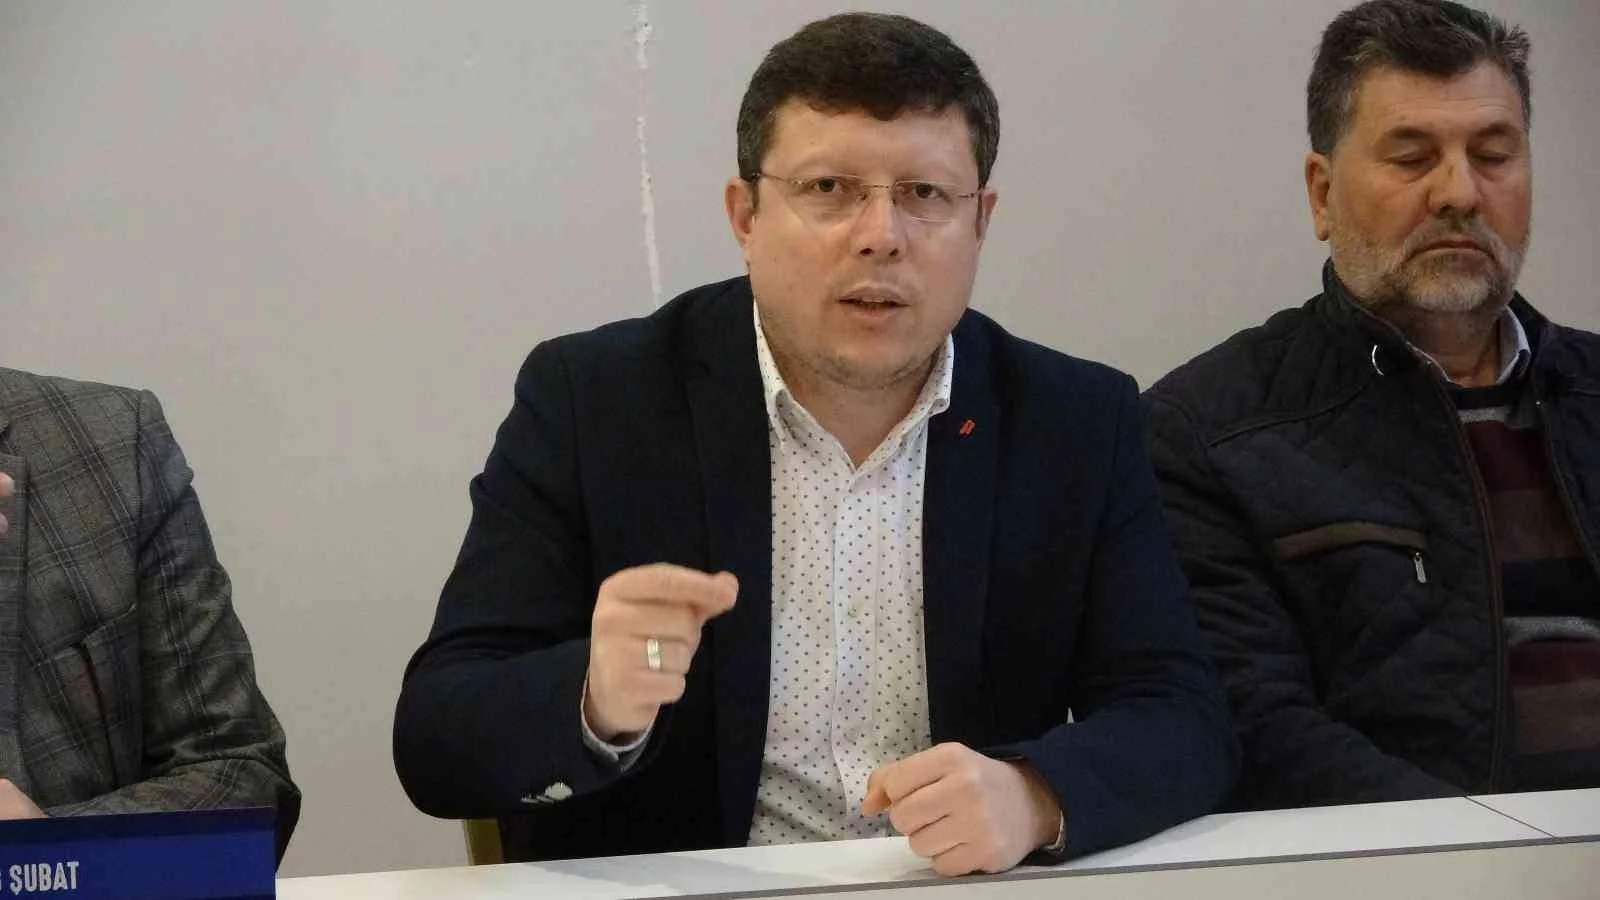 Uşak AK Parti: “28 Şubat darbesi vesayetçi sistemin ilk tezahürü değildir”